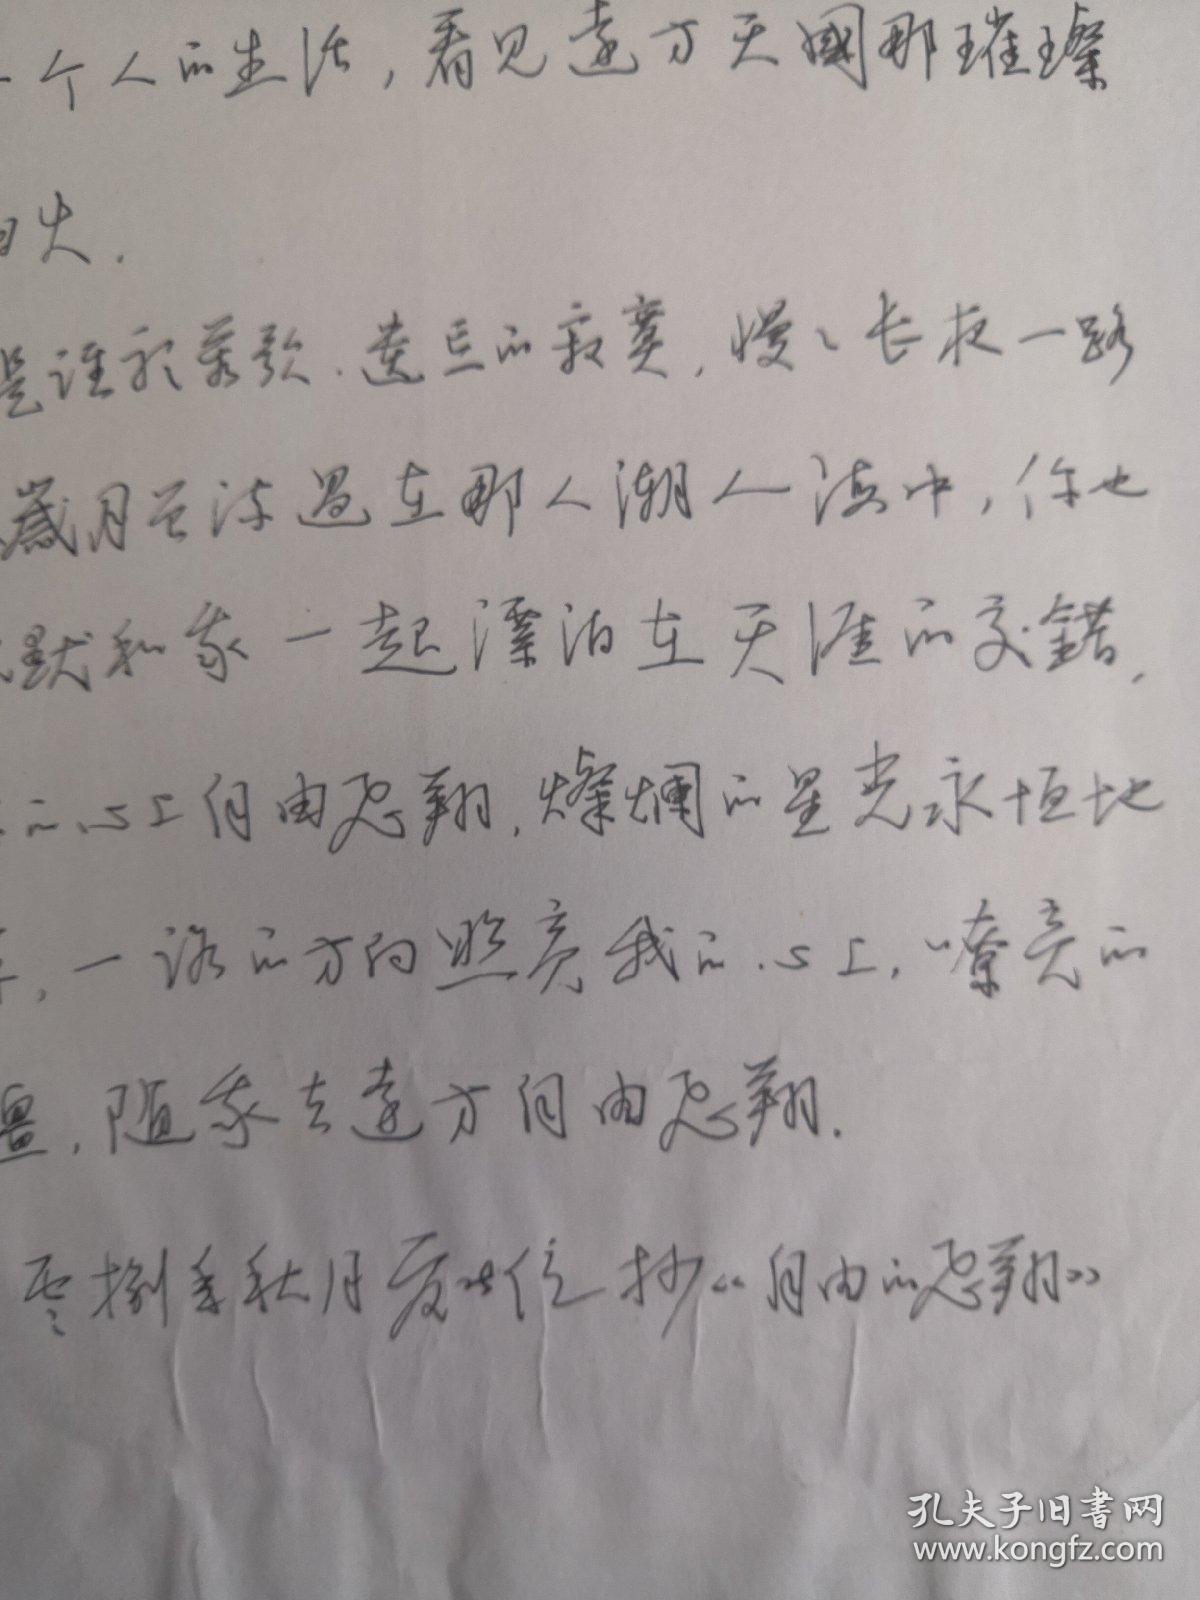 江西广丰-书法名家    夏能位   钢笔书法(硬笔书法）书法 1件 出版作品，出版在 《中国钢笔书法》杂志杂志2008年10期第18页 --见描述--保真----见描述